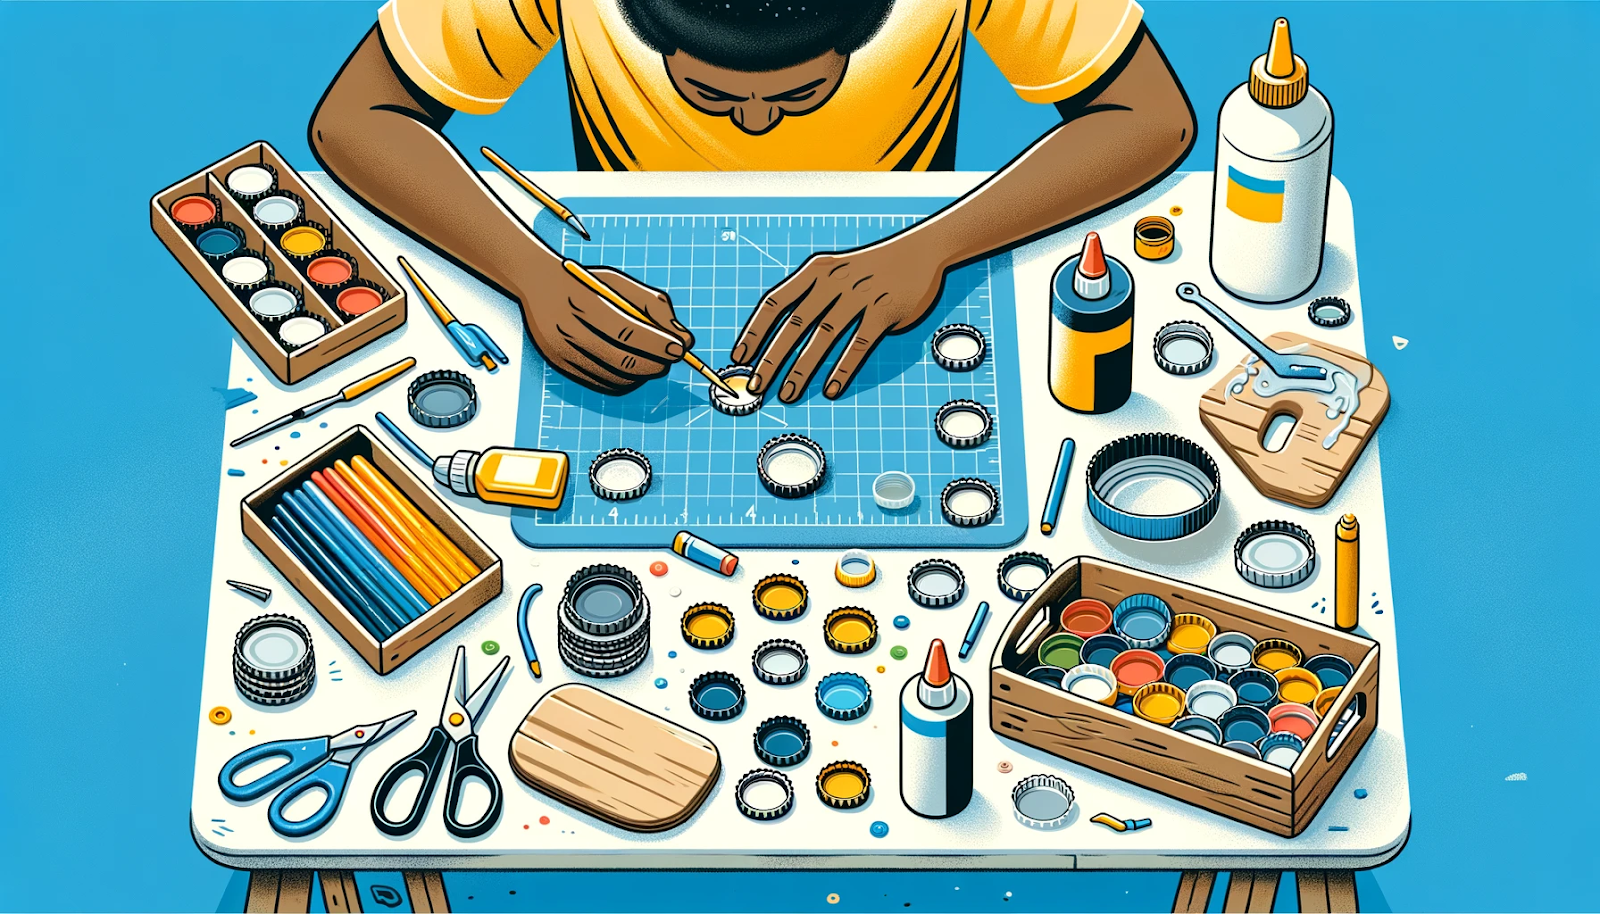 Ilustração de uma mesa de trabalho onde uma pessoa de ascendência africana cria meticulosamente uma base para copos usando tampas de garrafas plásticas. Cola, tinta e outras ferramentas de artesanato estão espalhadas pela área de trabalho.